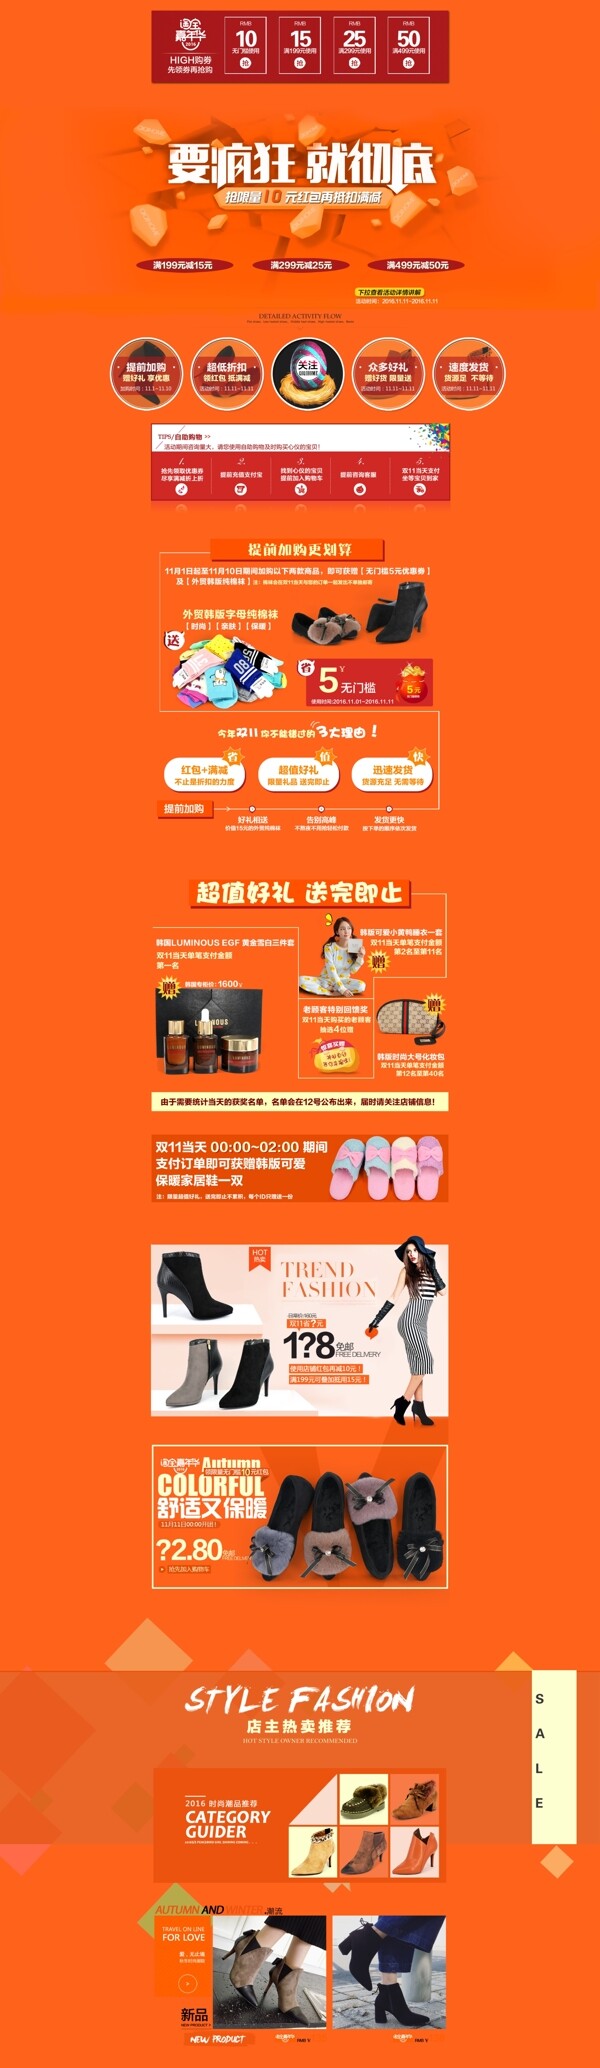 淘宝嘉年华承接页首页全屏海报模版女鞋类